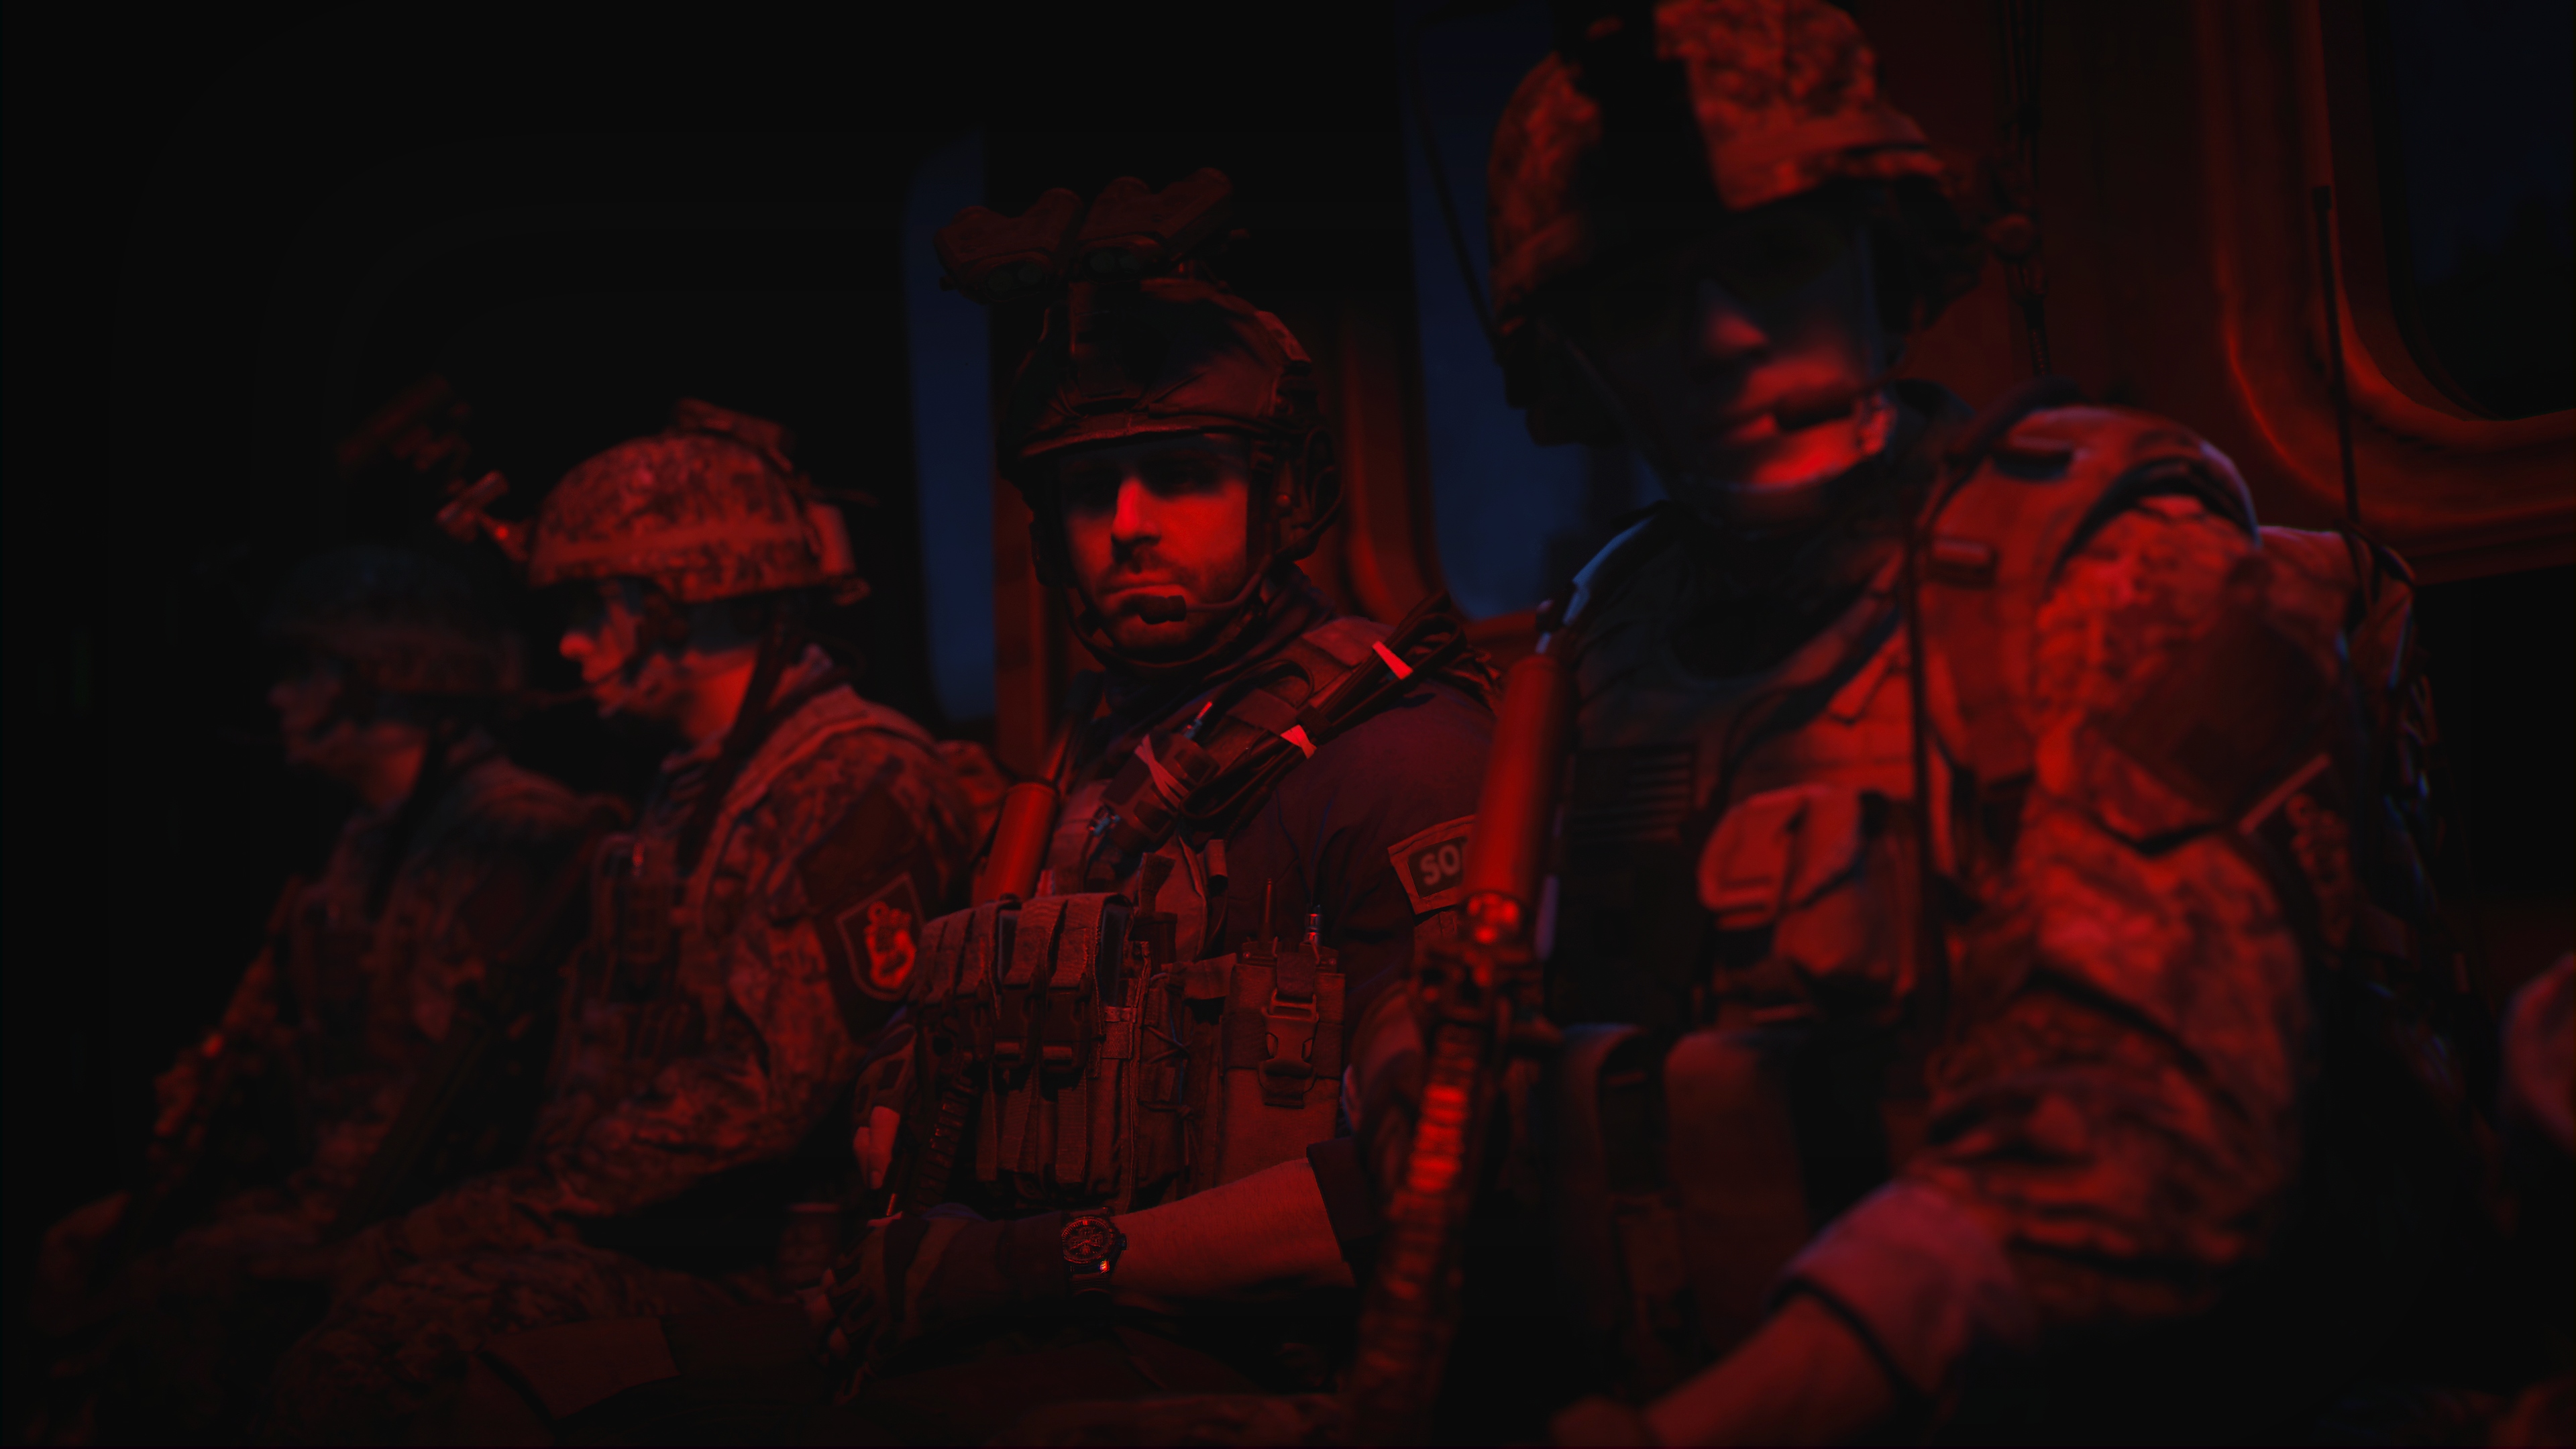 Call of Duty: Modern Warfare 2 2022 – kuvakaappaus kolmesta hahmosta, jotka seisovat punaisessa valossa